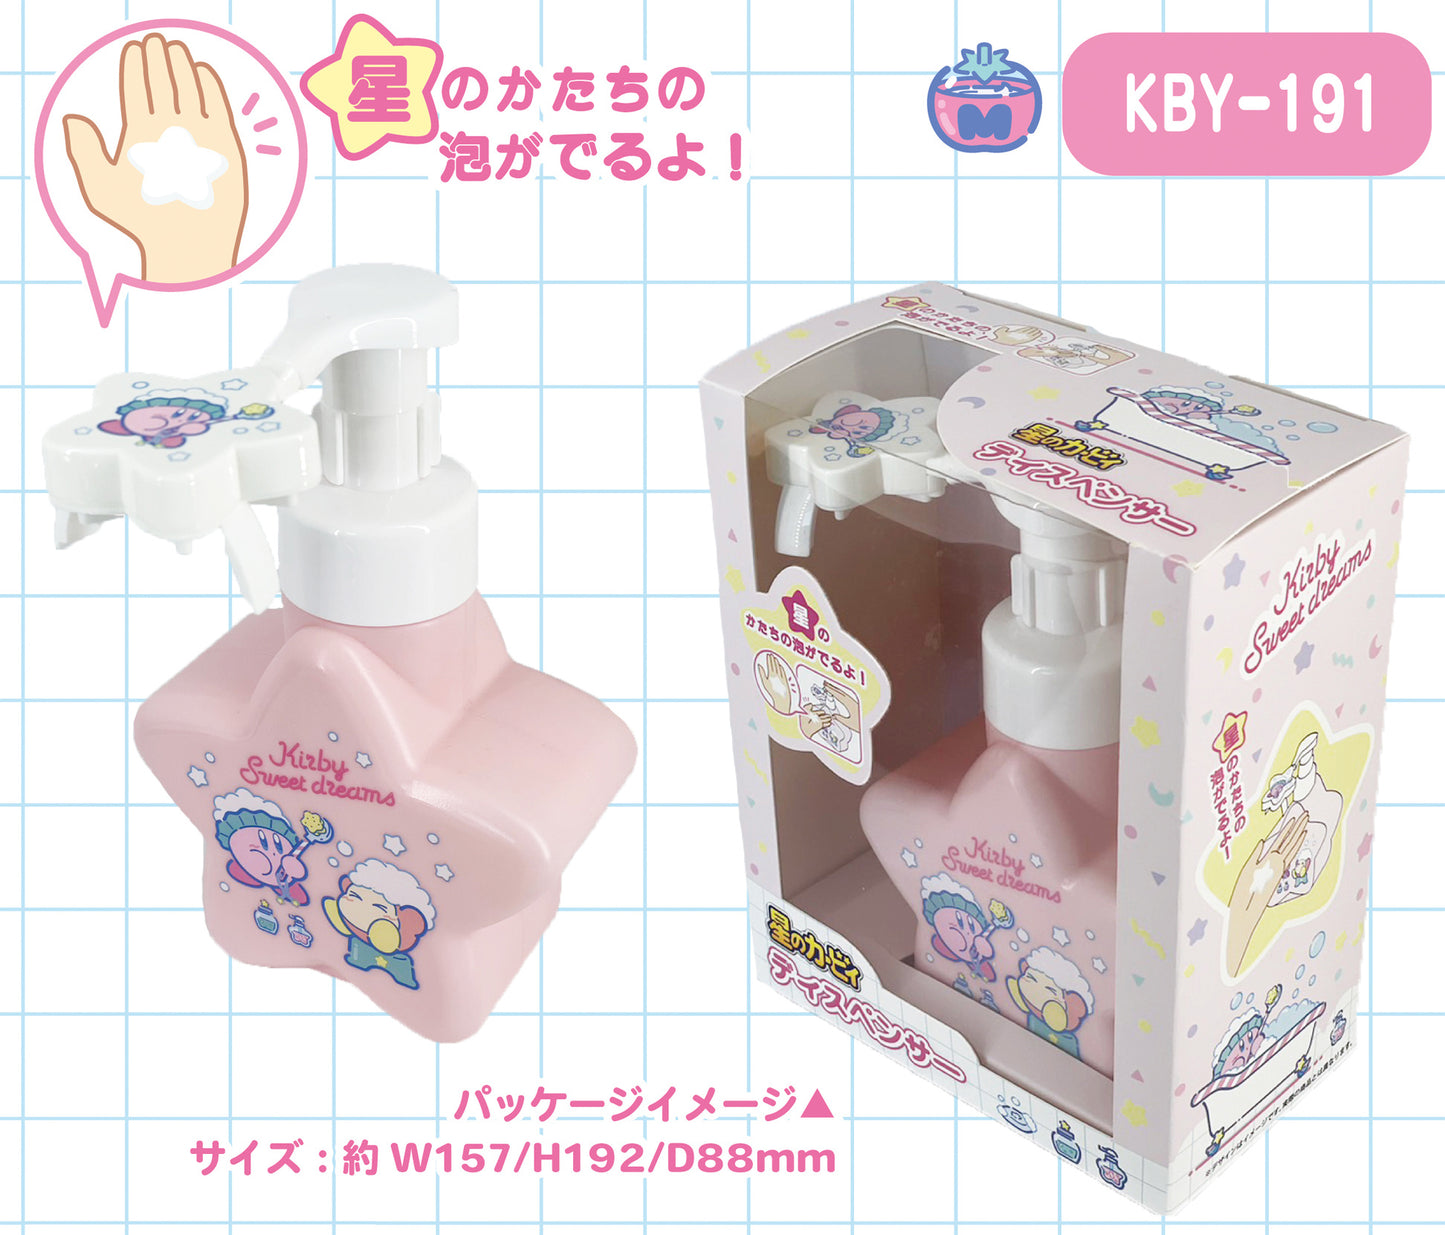 Kirby: Foamy Soap Dispenser